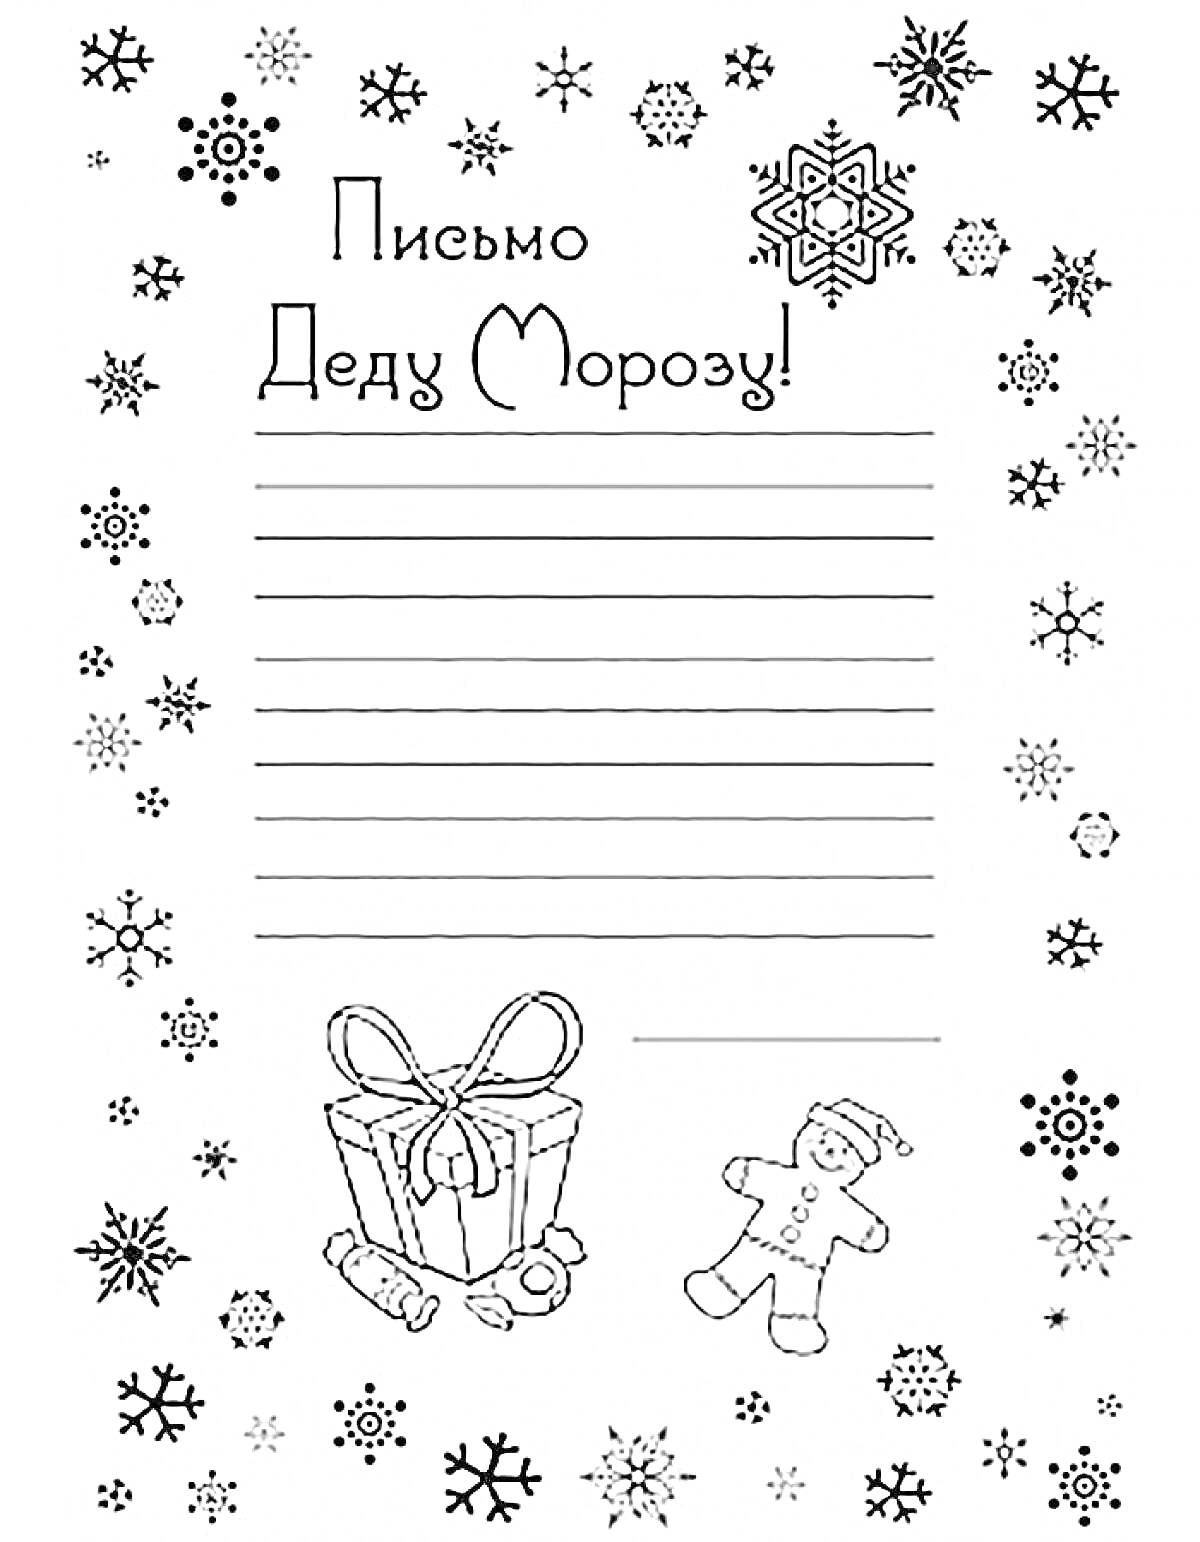 Раскраска Письмо Деду Морозу с подарком, пряничным человечком и снежинками